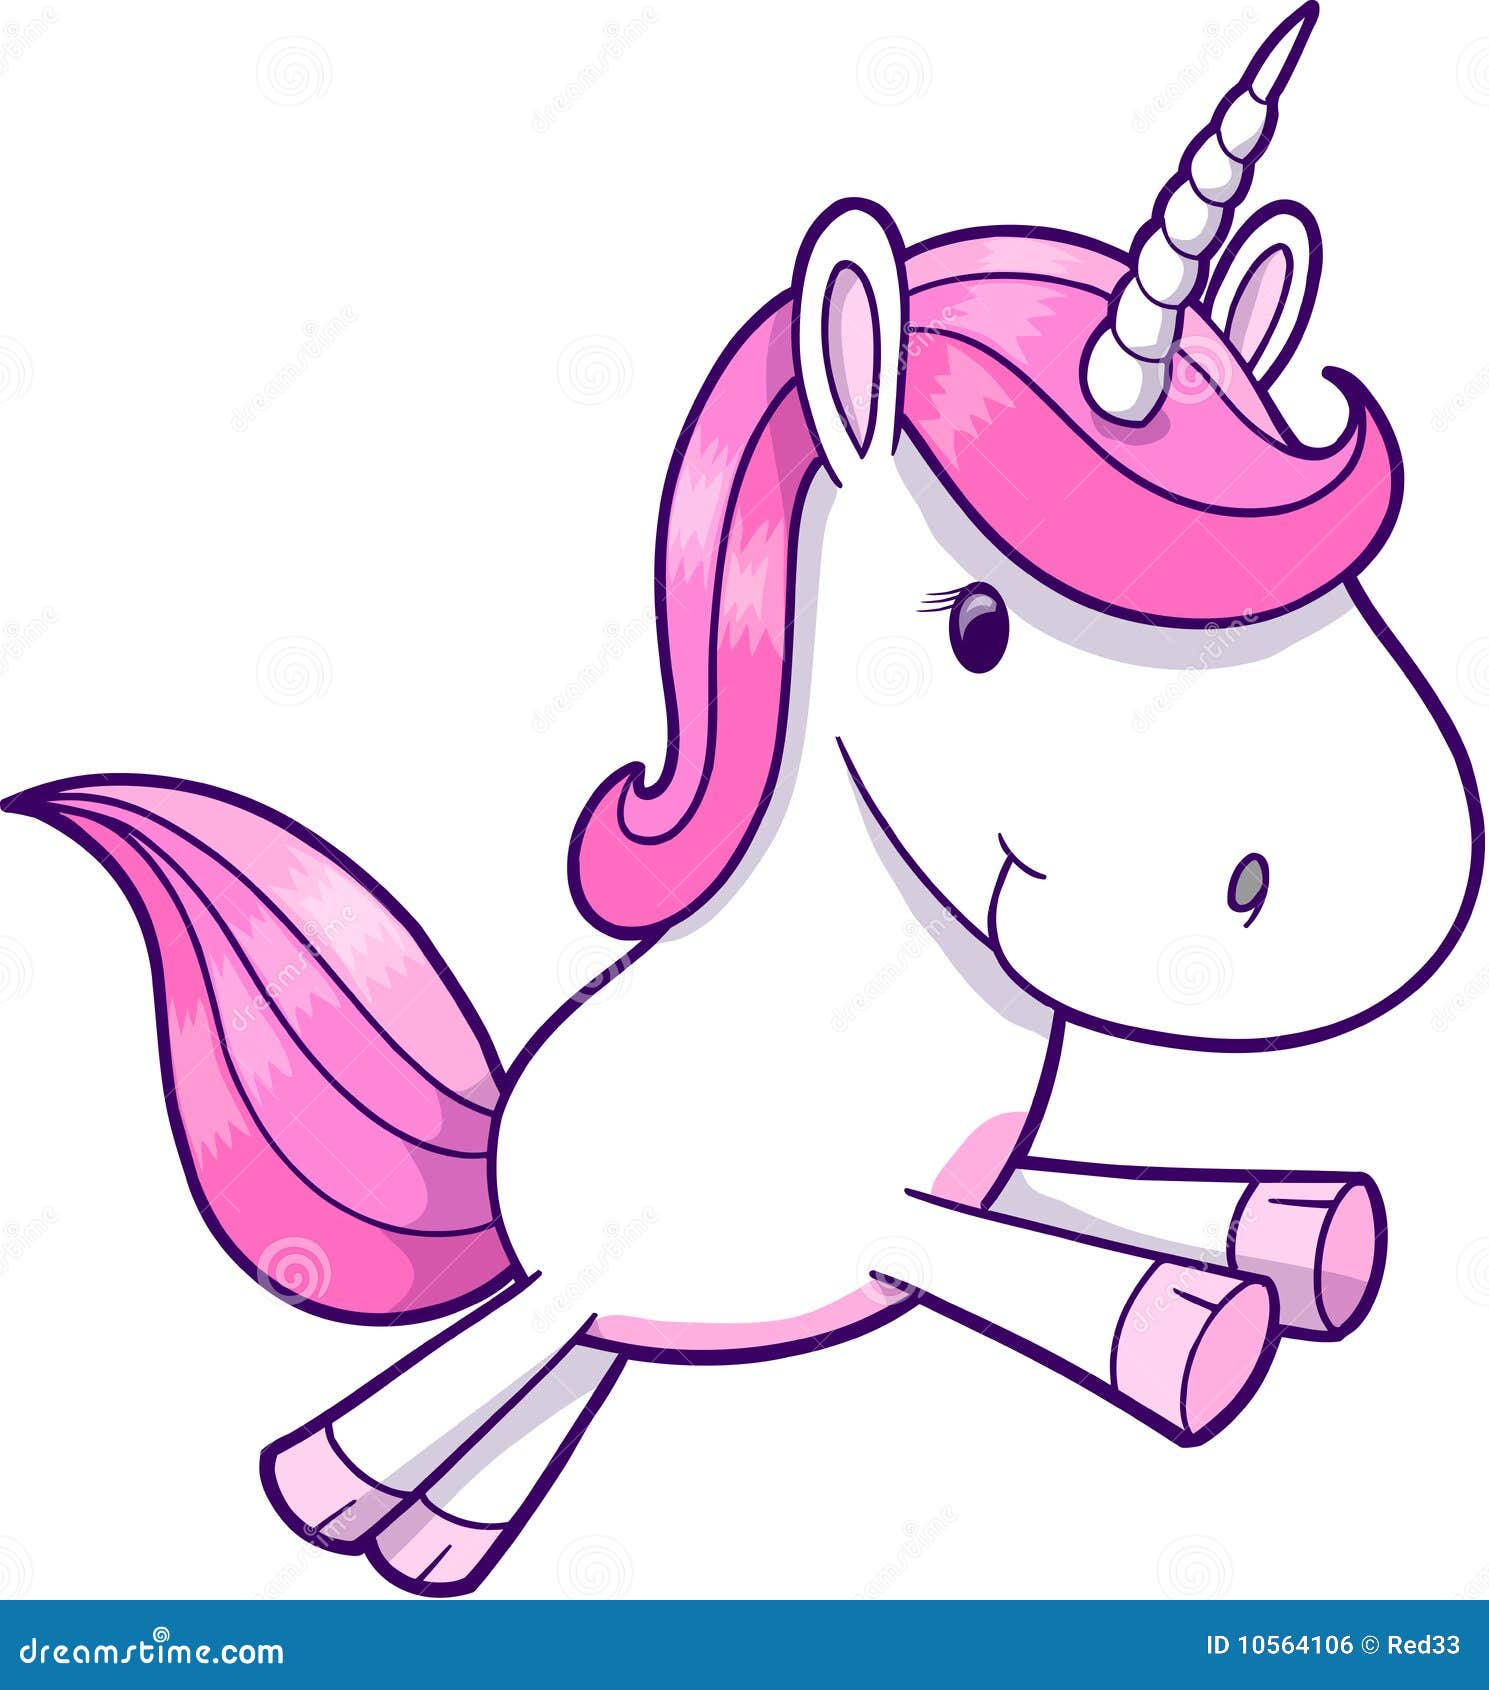 free animated unicorn clipart - photo #46